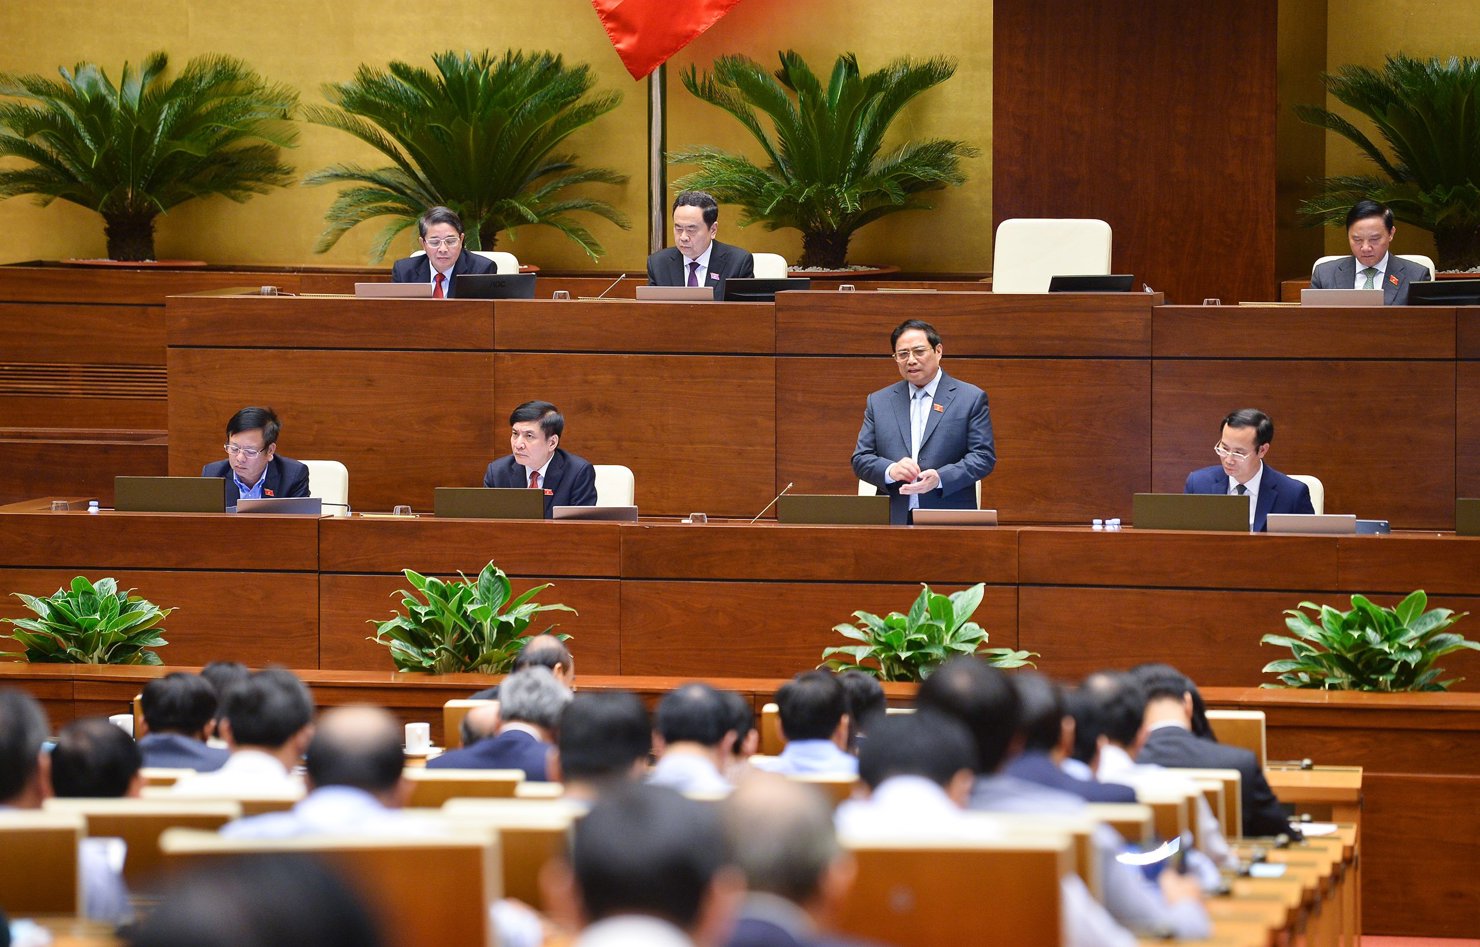 Thủ tướng Phạm Minh Chính phát biểu làm rõ những vấn đề thuộc trách nhiệm chỉ đạo, điều hành của Chính phủ và trực tiếp trả lời chất vấn của các đại biểu Quốc hội.